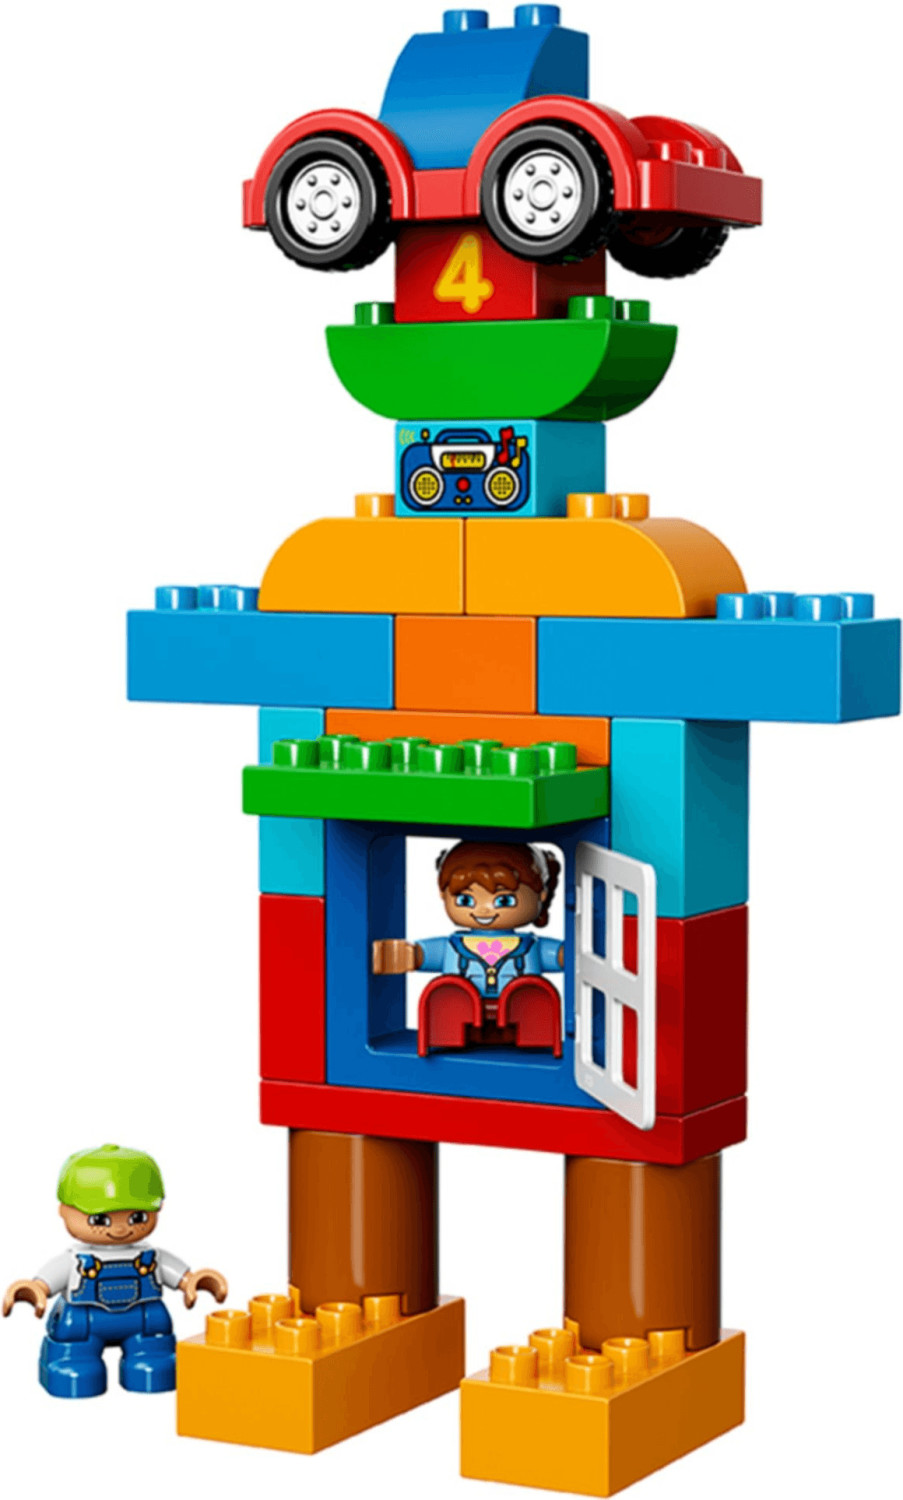 LEGO Duplo 5509 pas cher, Boîte de complément 6 Couleurs